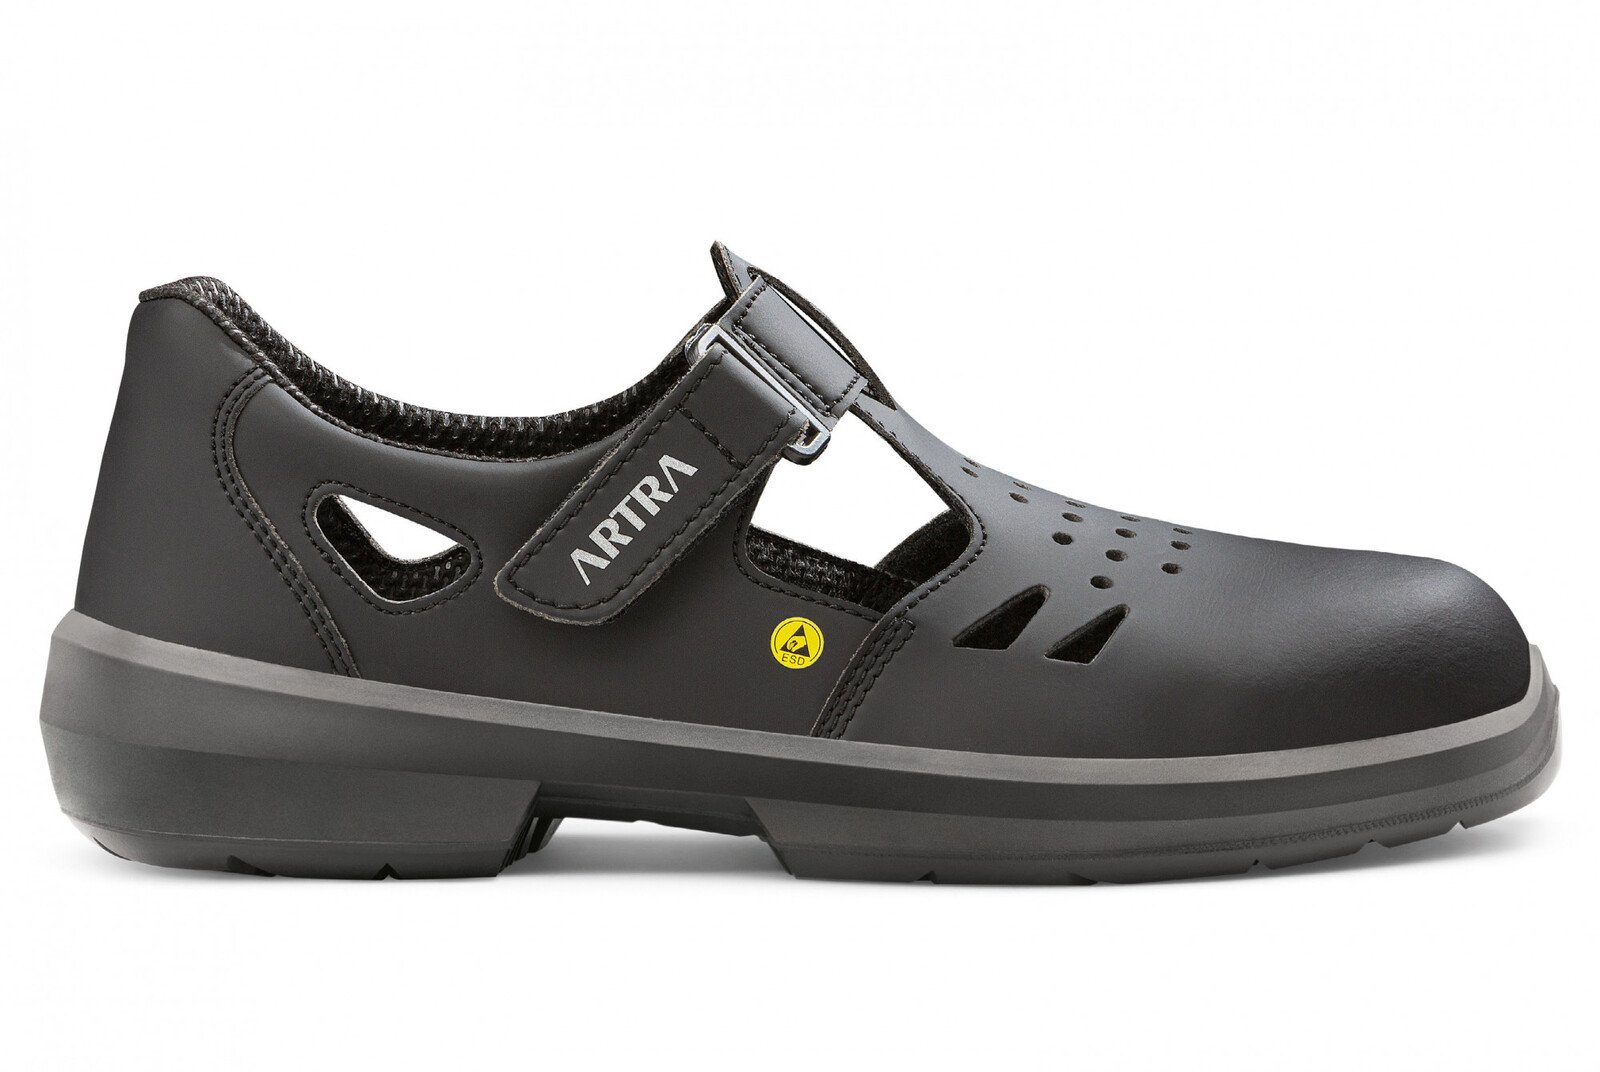 Bezpečnostné sandále Artra Armen 9008 6760 S1P SRC ESD MF - veľkosť: 41, farba: čierna